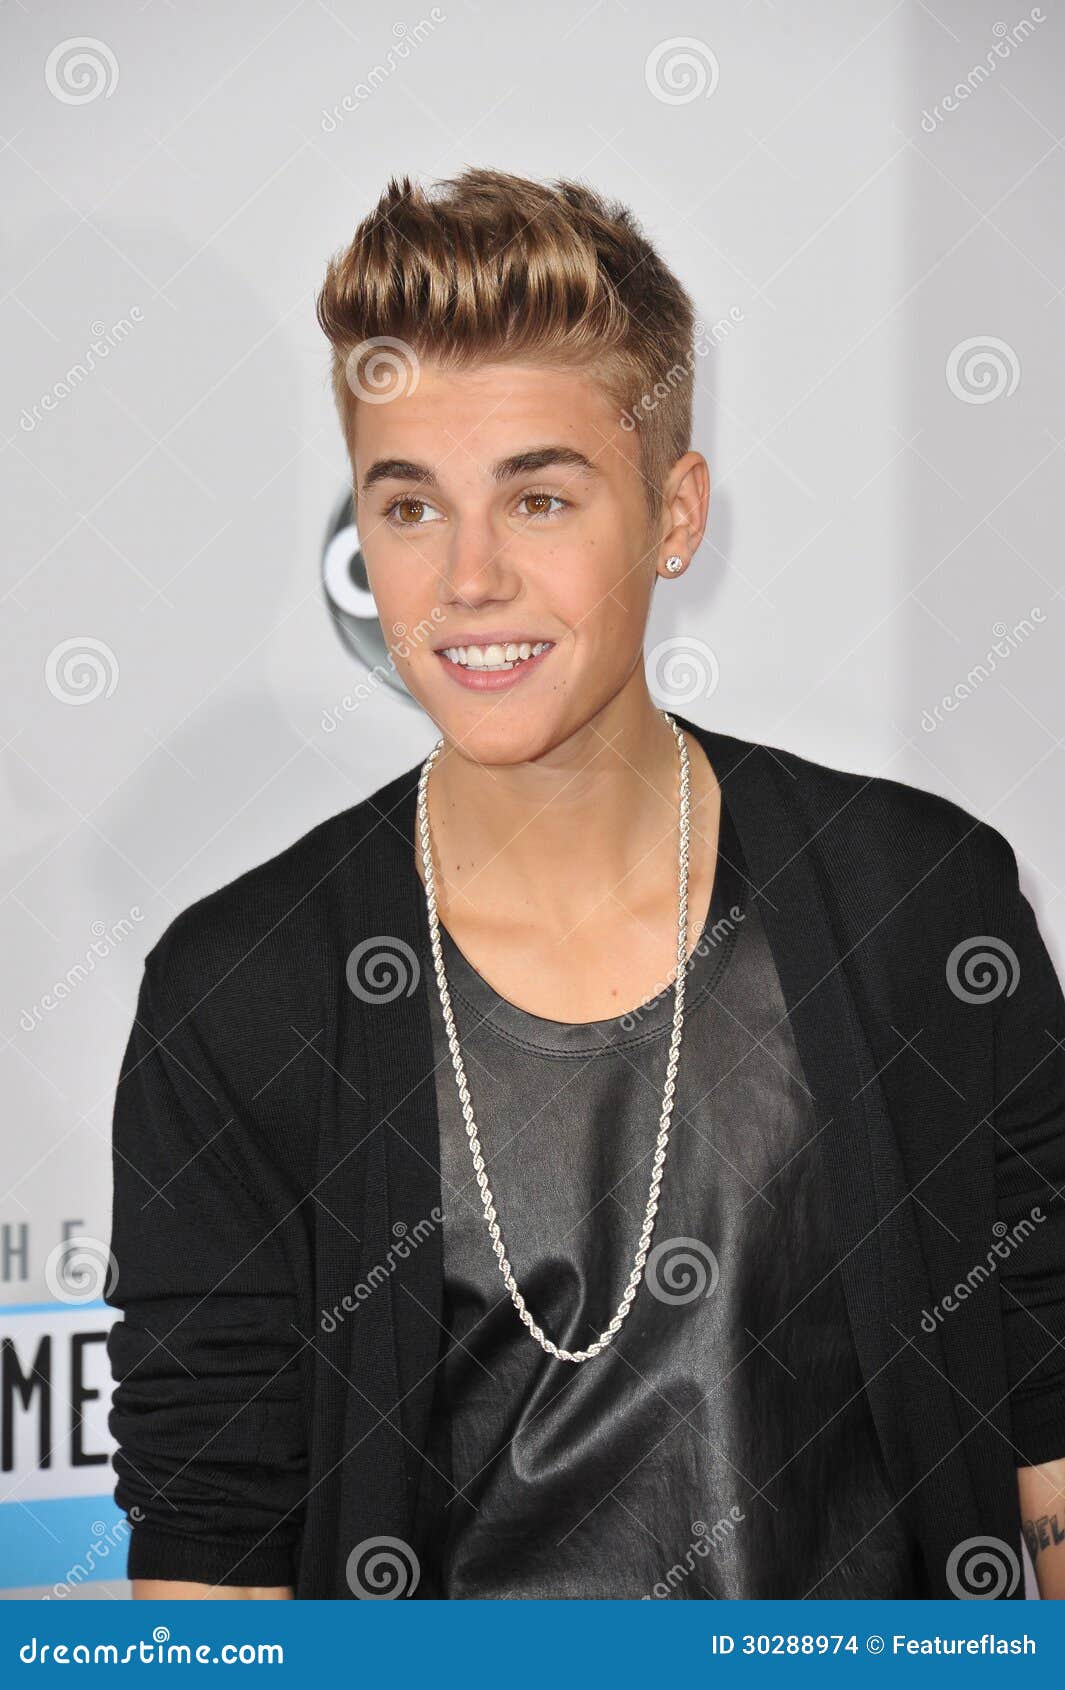 Benadrukken Ziek persoon medeklinker Justin Bieber redactionele stock afbeelding. Image of leef - 30288974